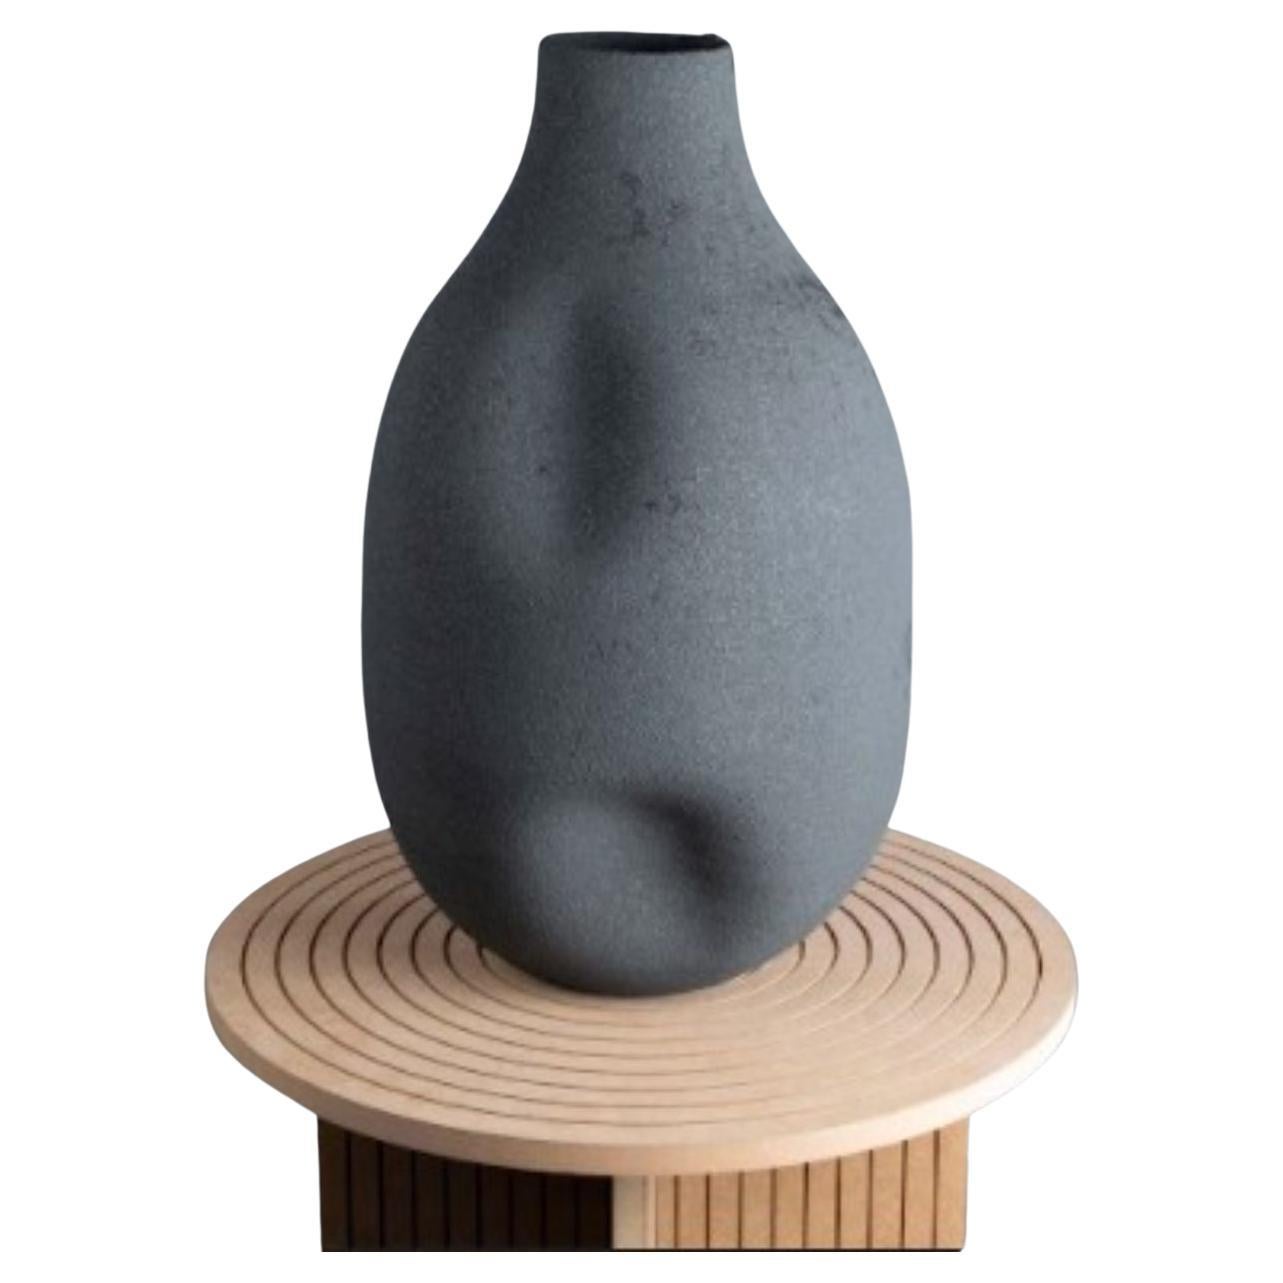 MaxiVases Antracit Vase by Roman Sedina